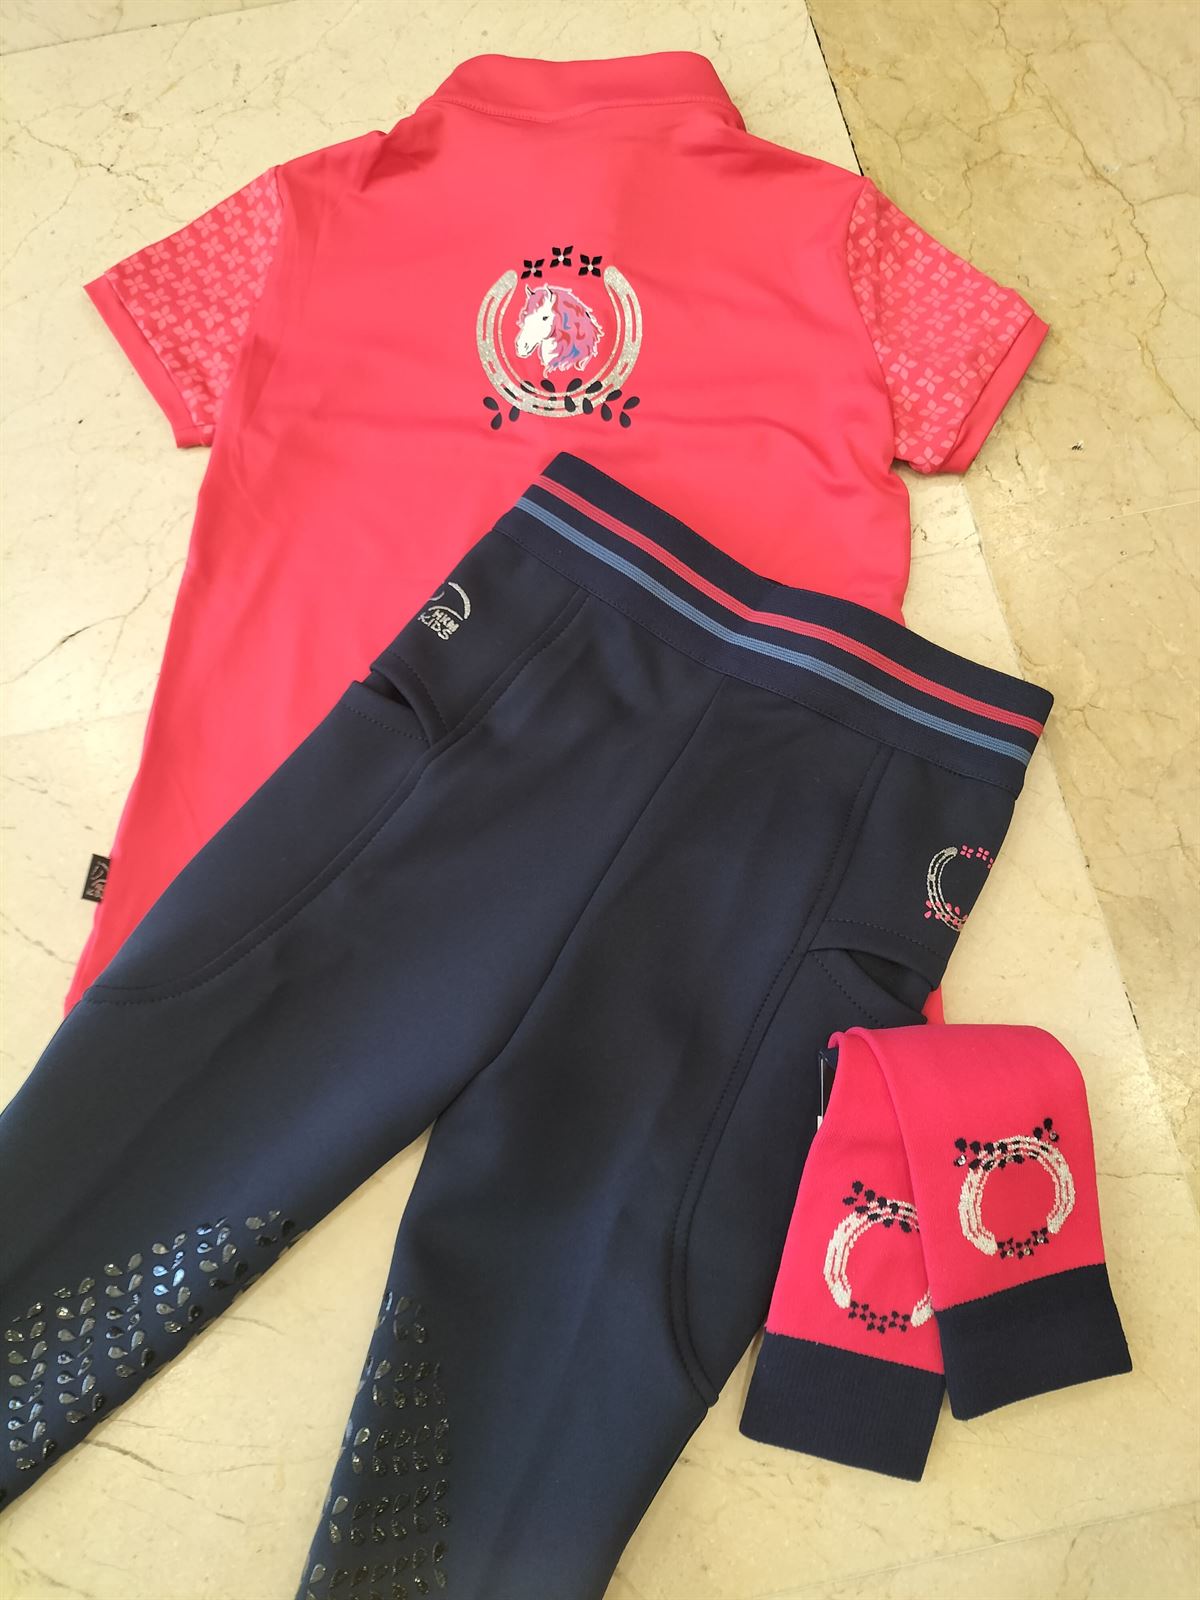 Camiseta técnica HKM Sports Equipment Aymee color rosa TALLA 140 (7-9 años) - Imagen 3